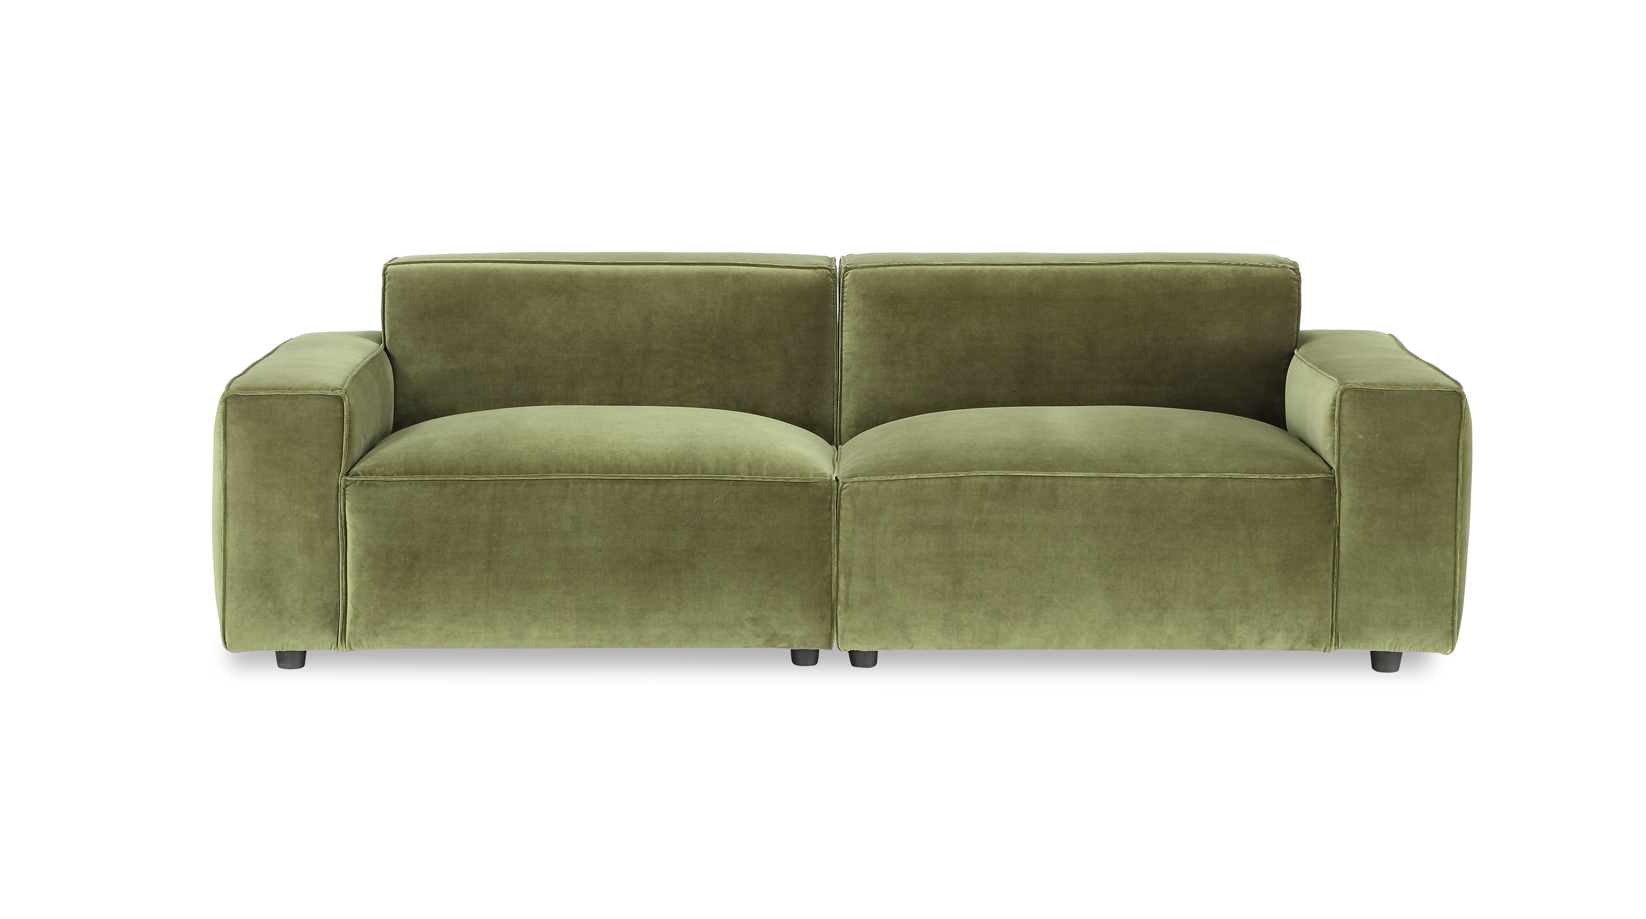 A.R.T. Furniture Olafur sofa